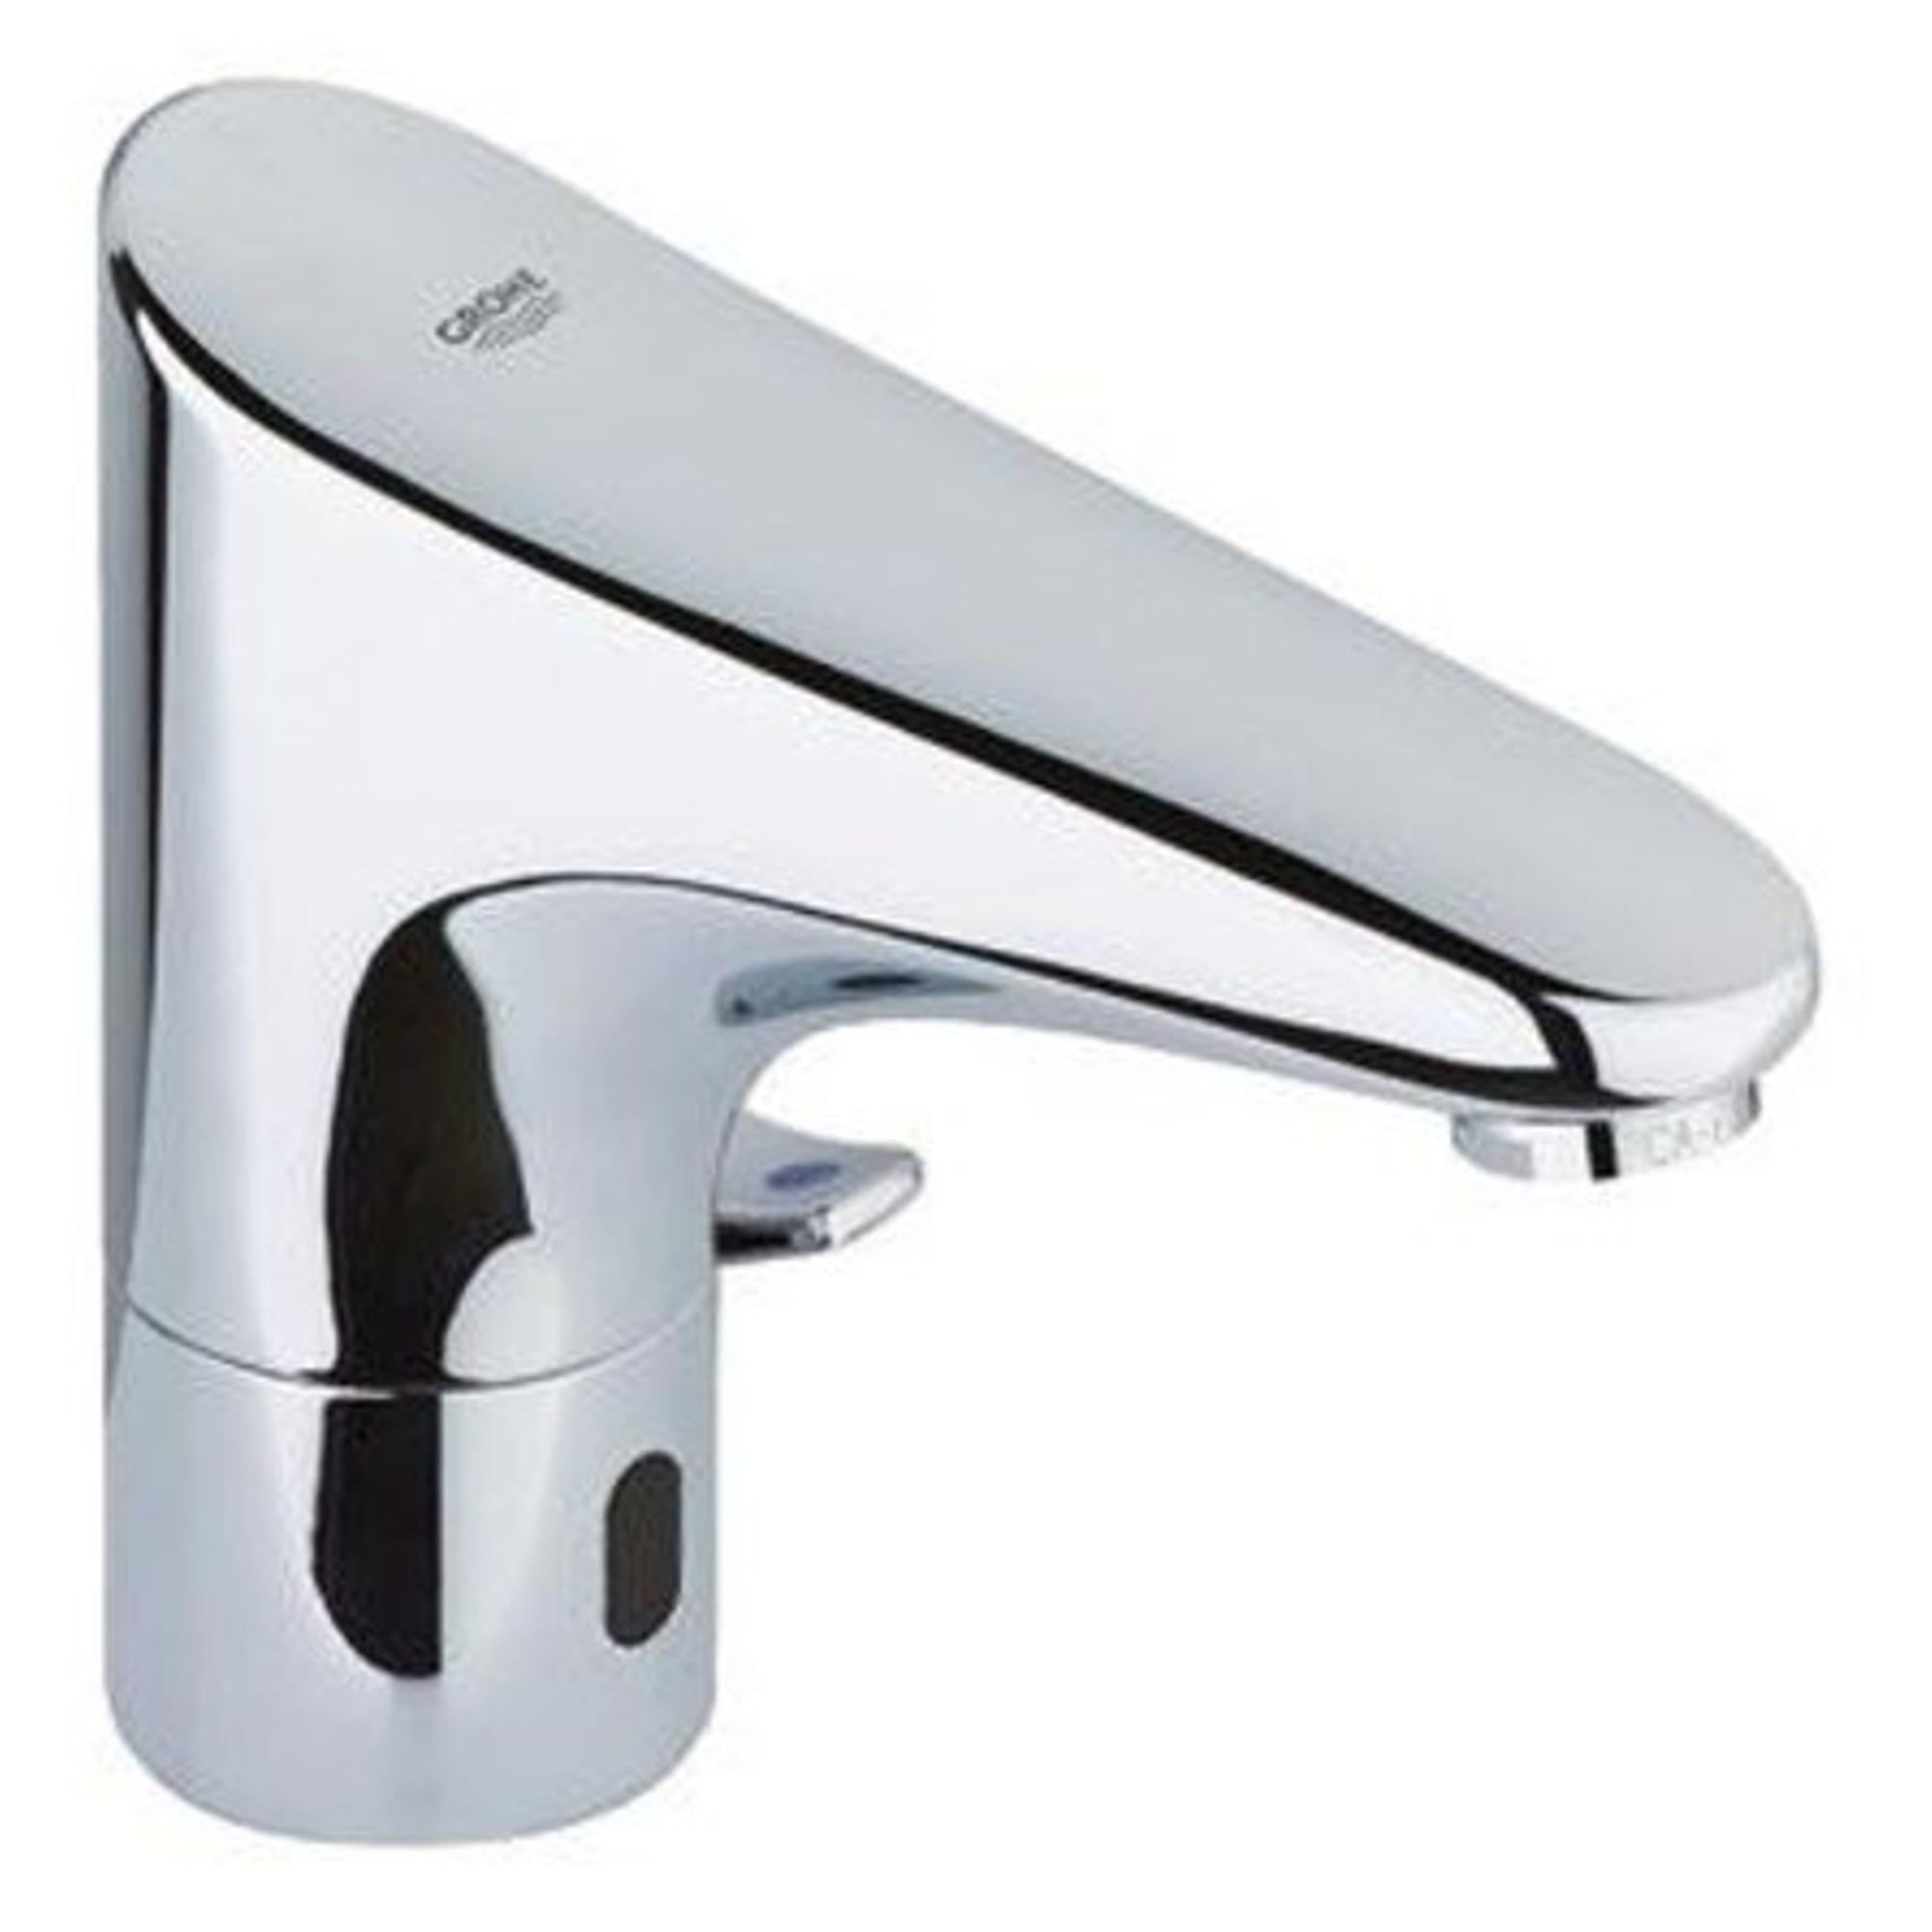 GROHE Europlus E robinet pour lavabo infrarouge avec mélangeur